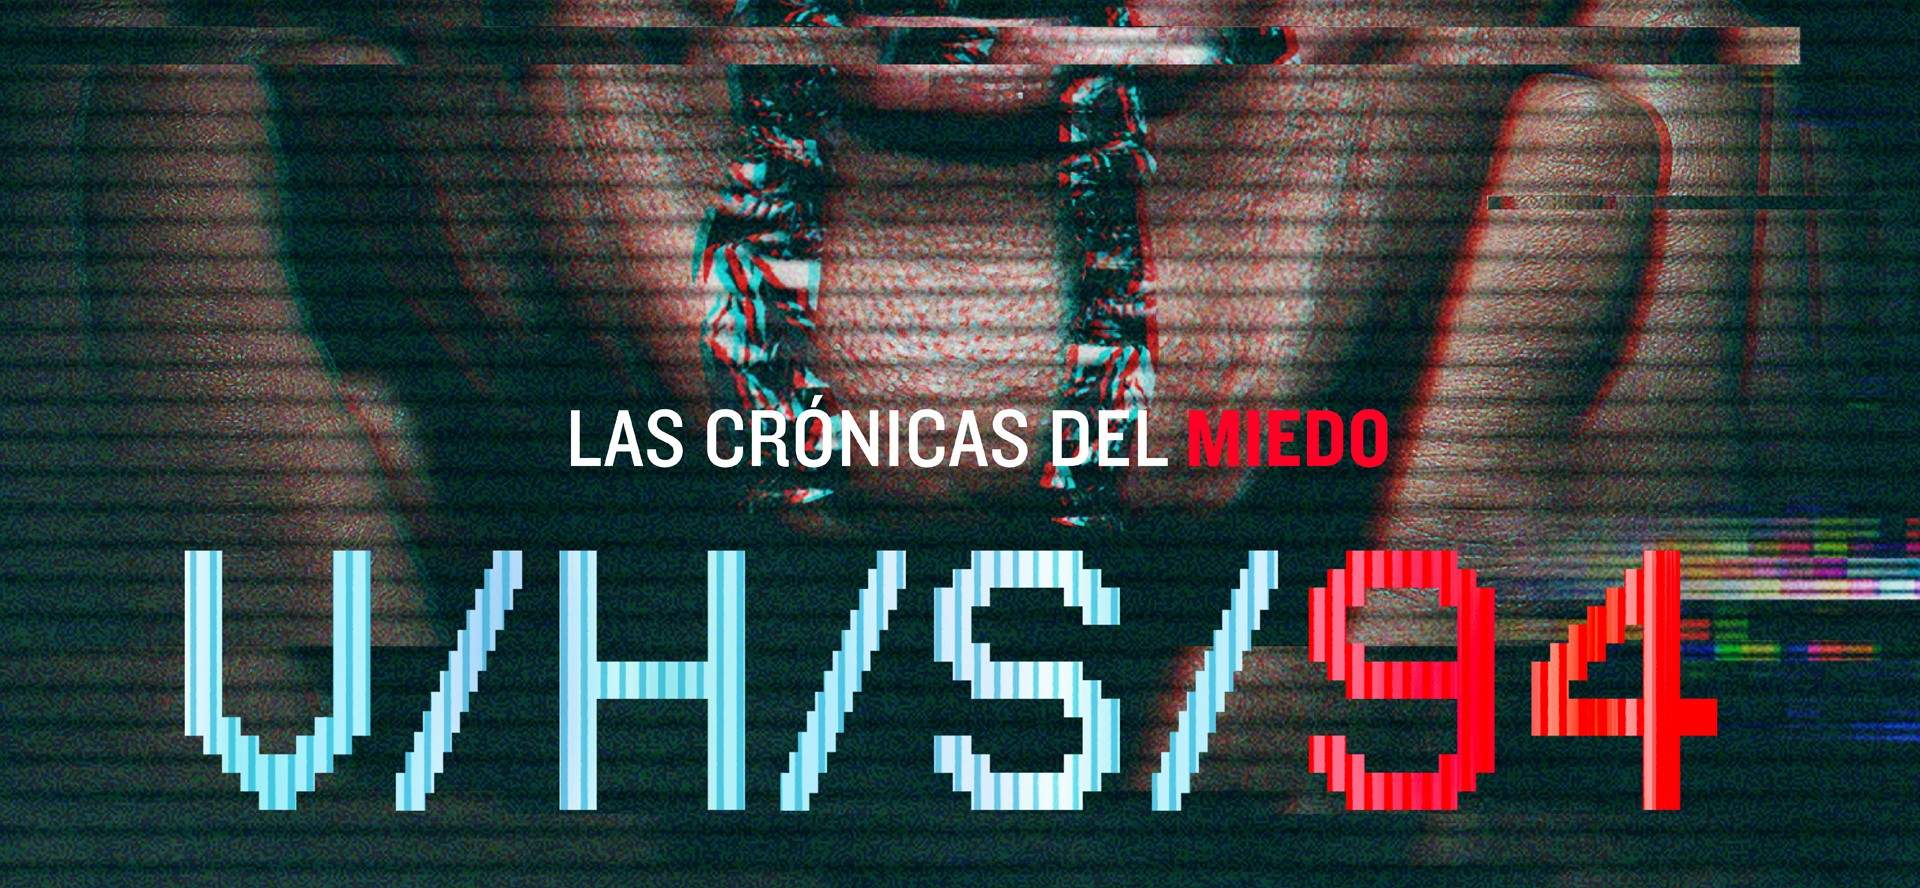 V/H/S 94: La antología de terror vuelve a los cines Chilenos 